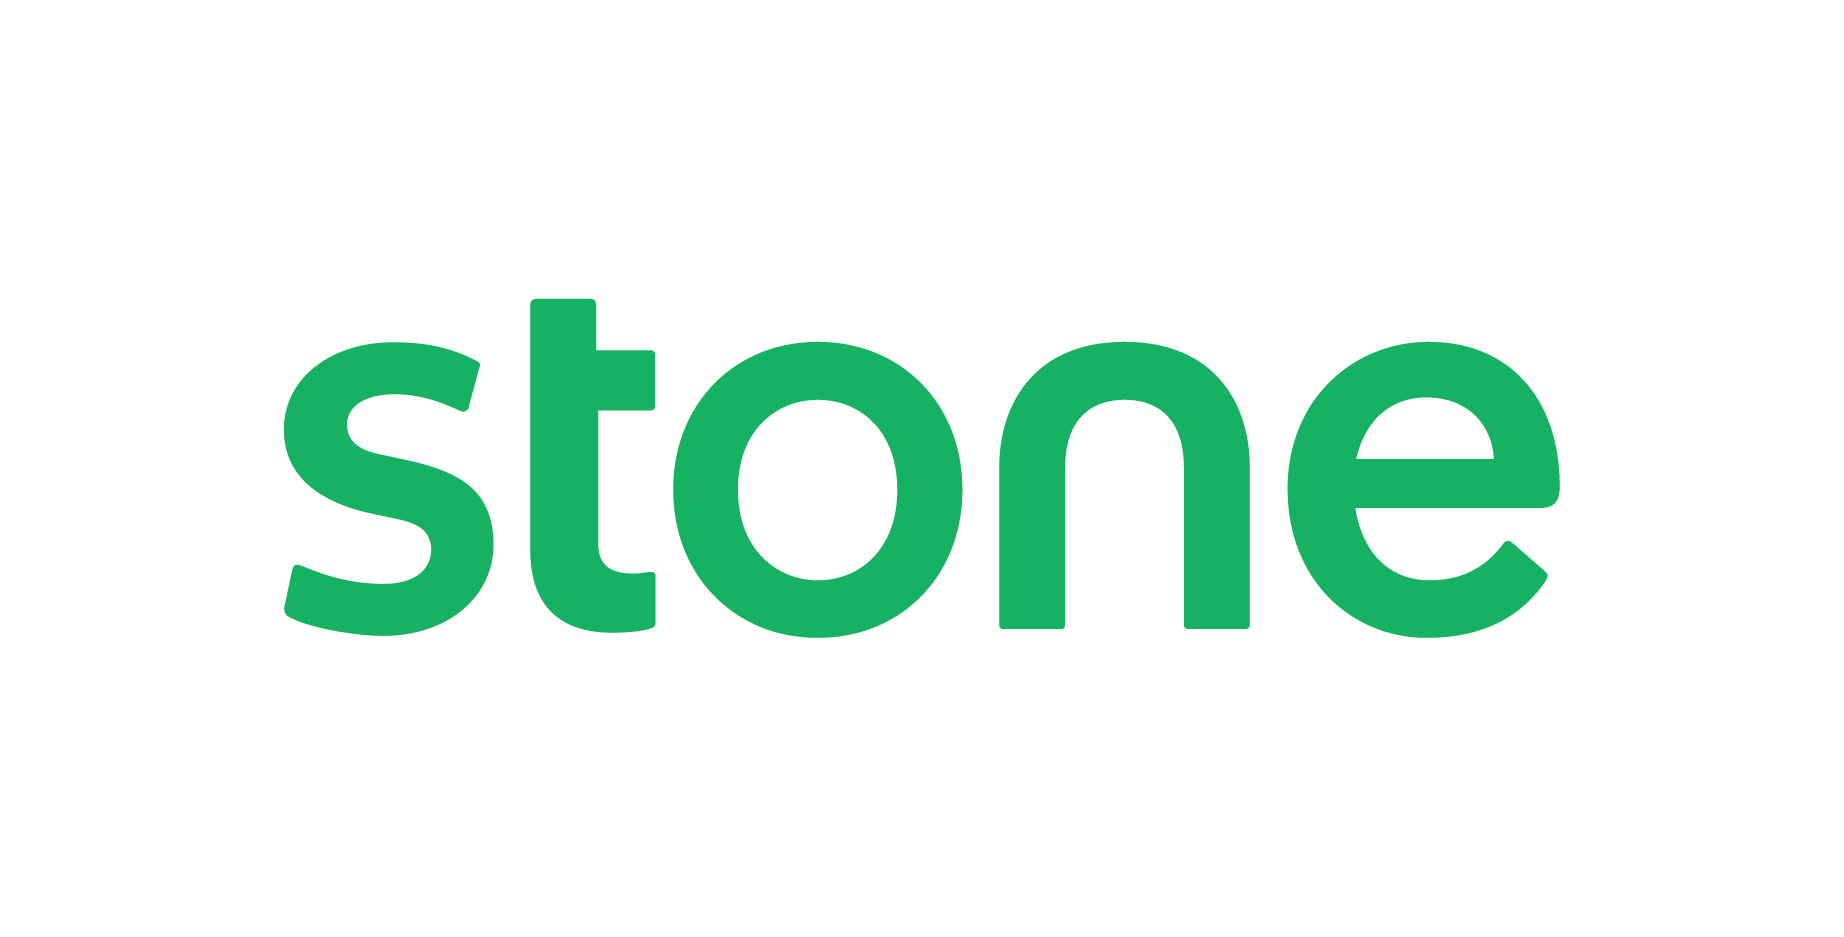 Logo Stone